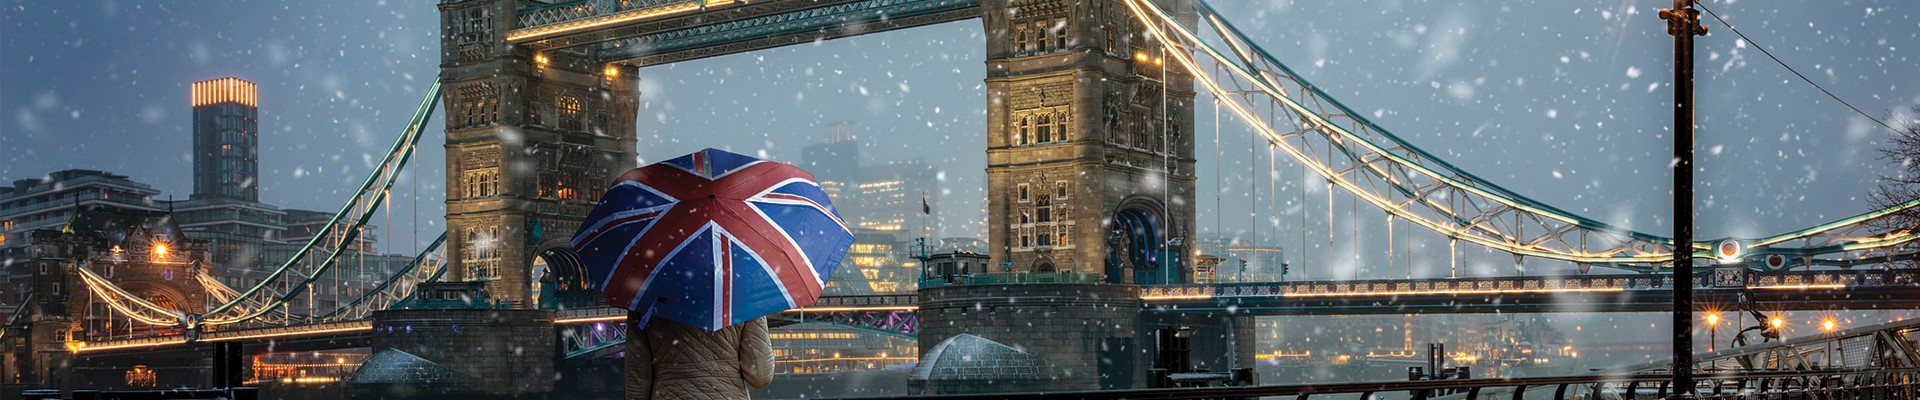 4* Winter Wonderland Experience - London Package (5 nights)